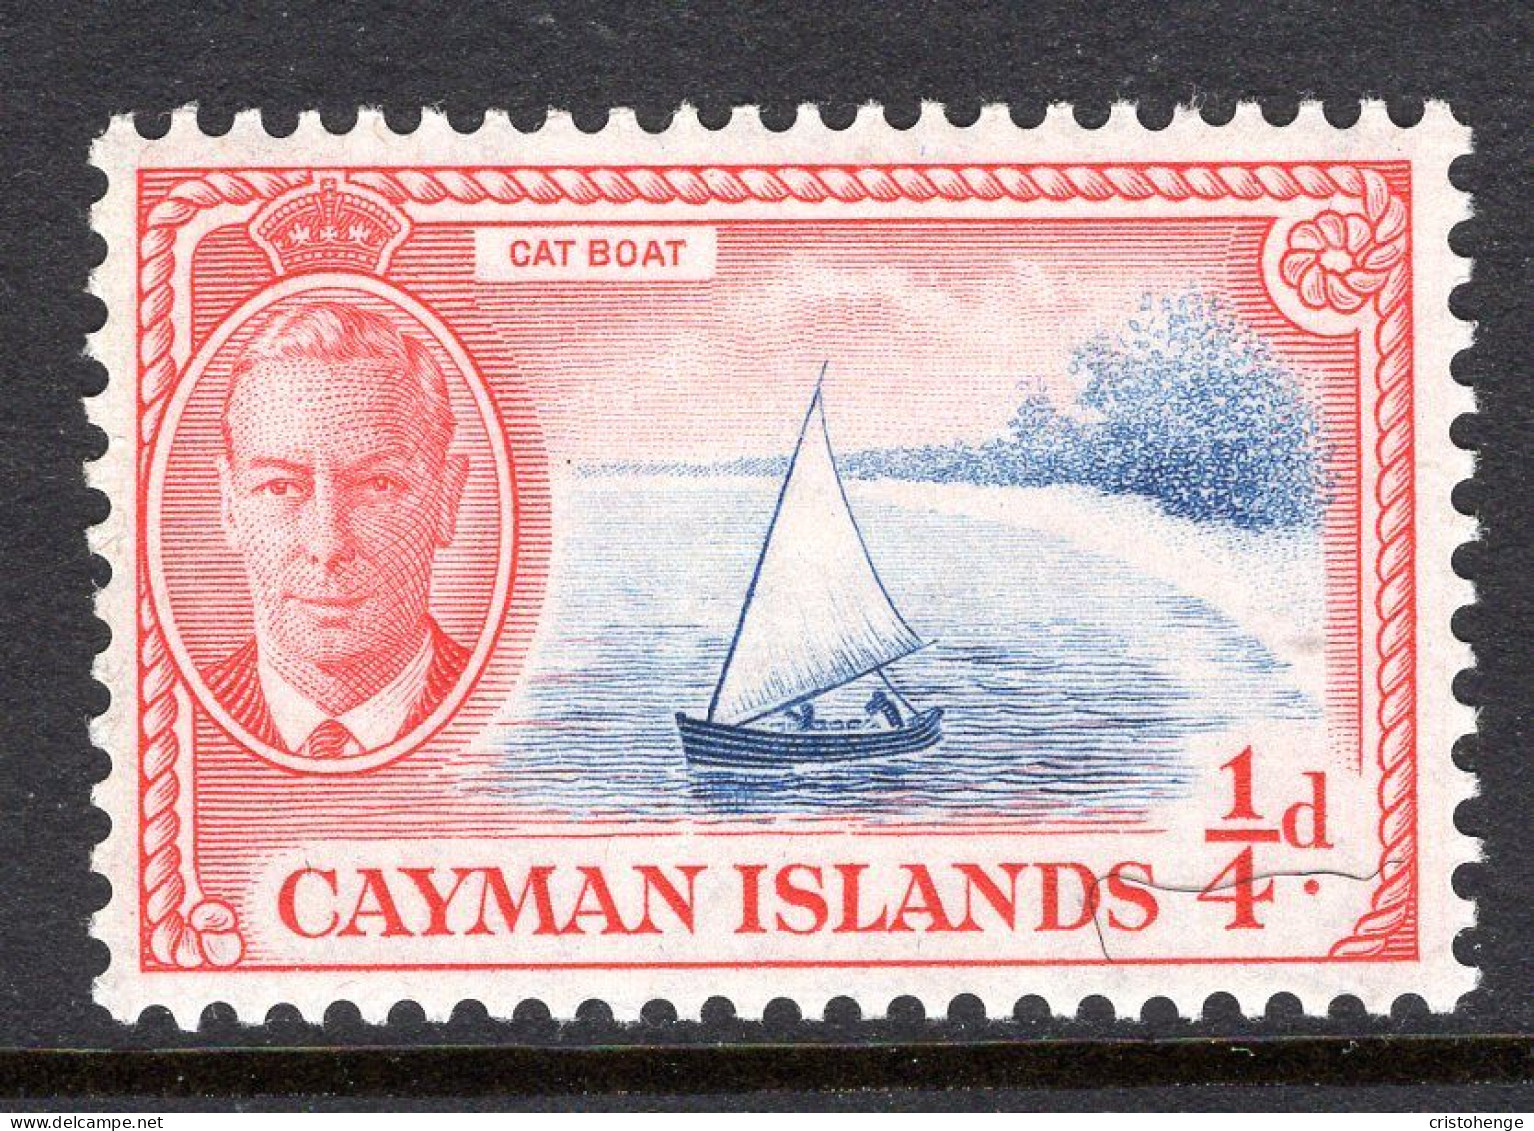 Cayman Islands 1950 KGVI Pictorials - ¼d Cat Boat HM (SG 135) - Cayman Islands